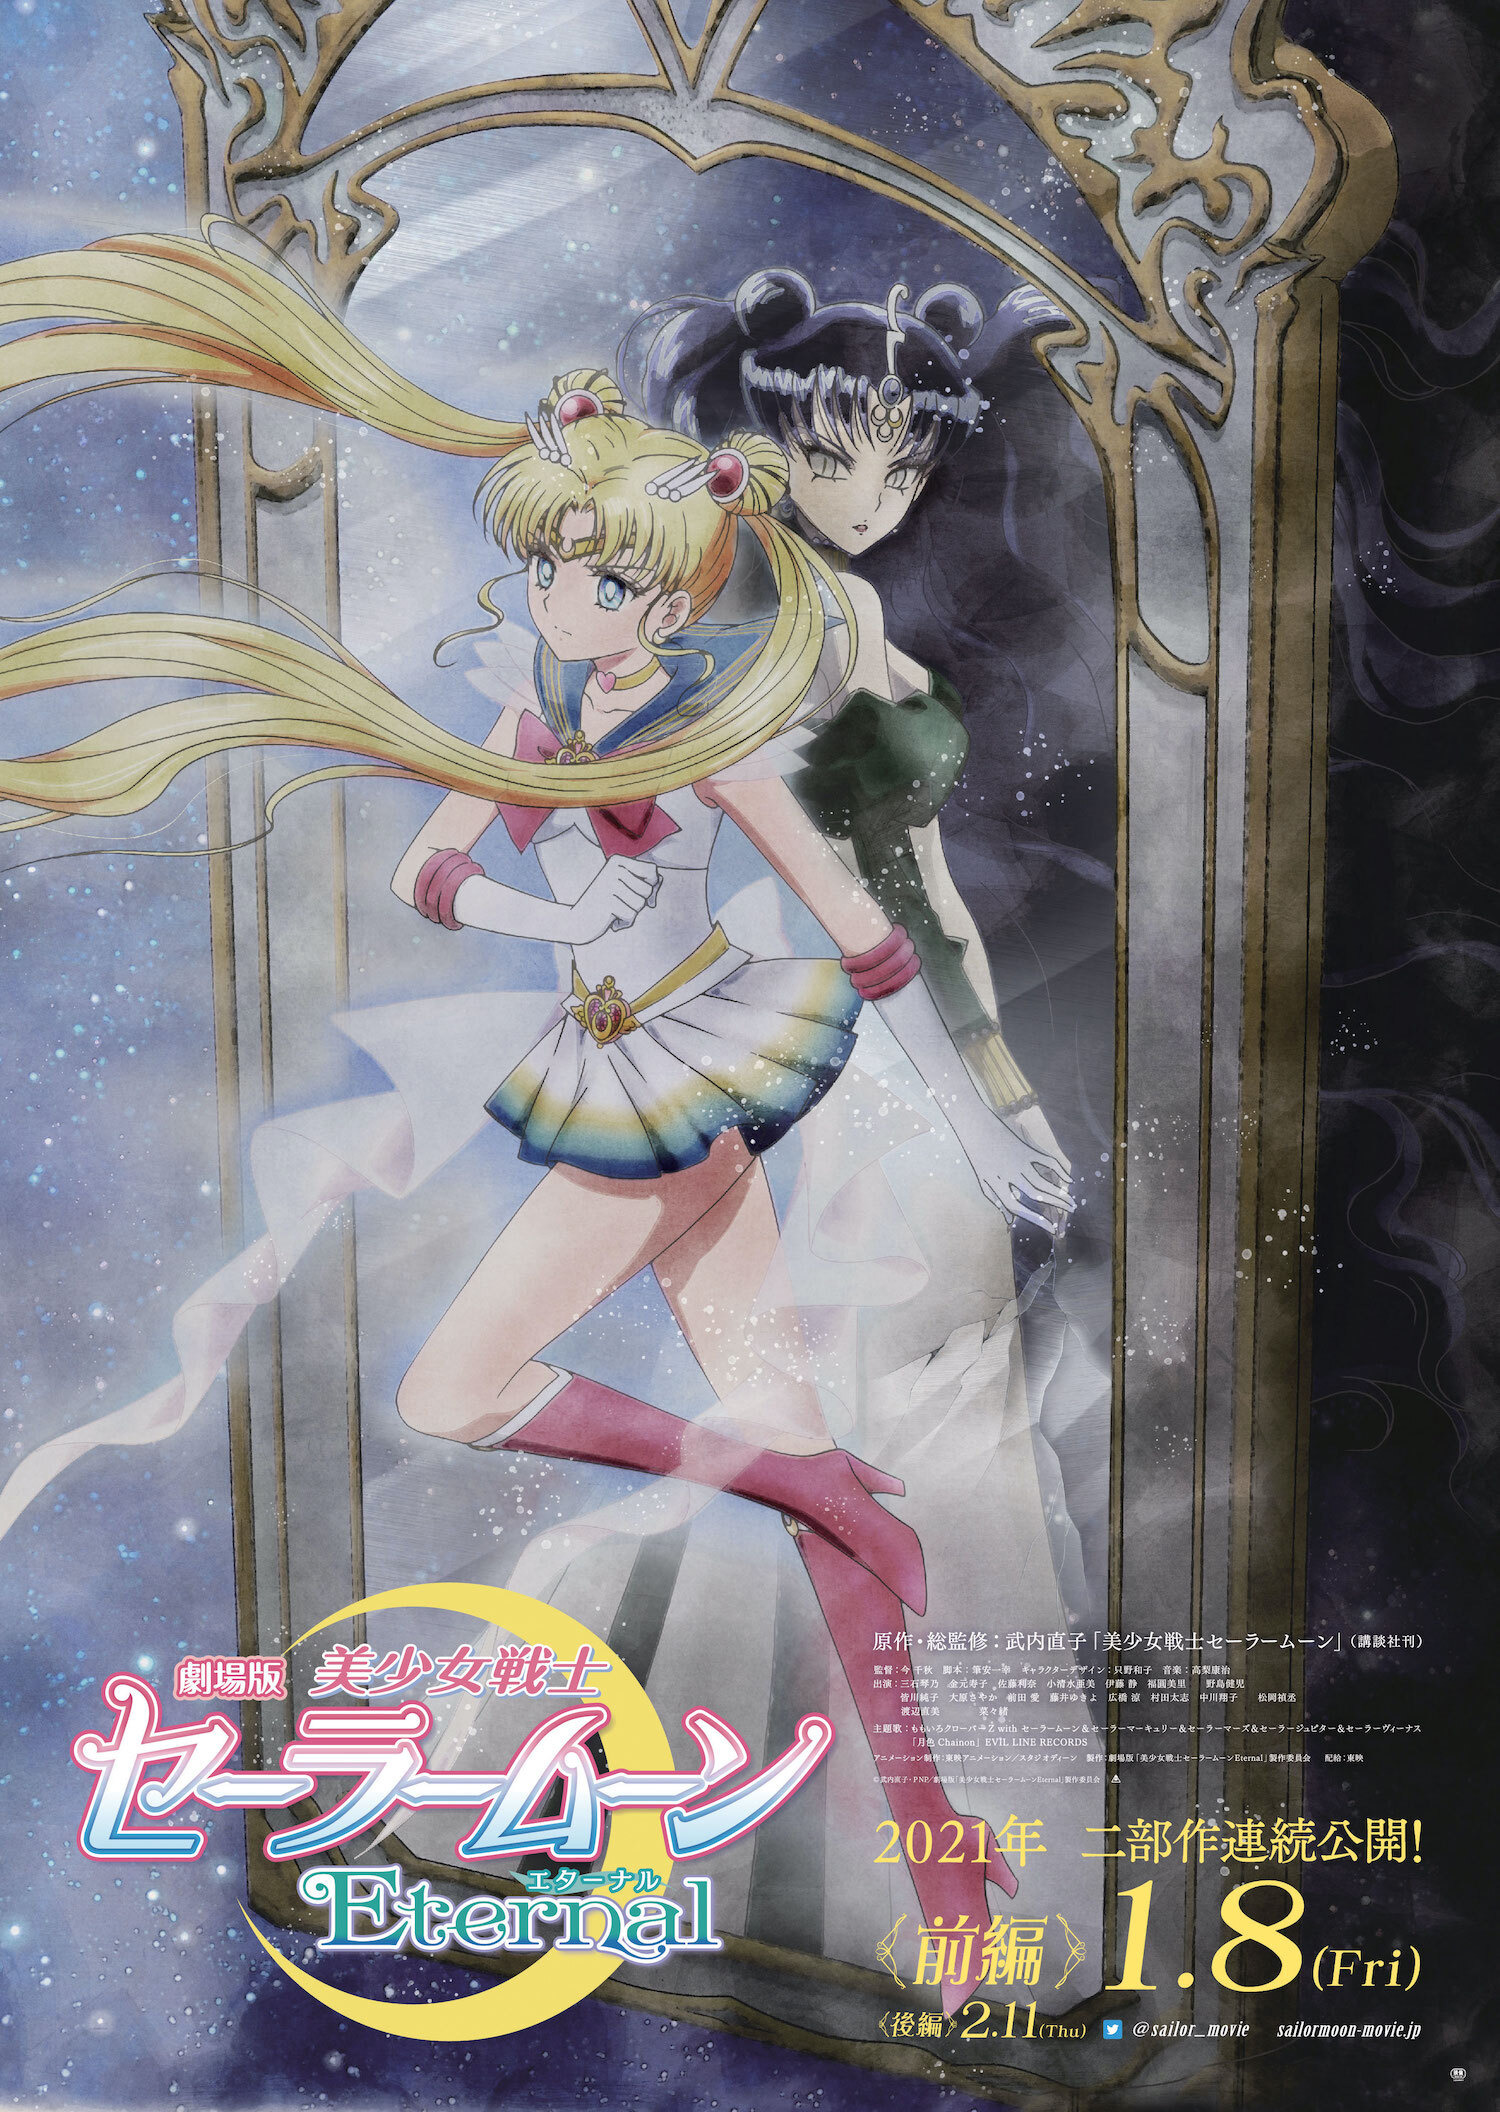 Mega Sized Movie Poster Image for Gekijouban Bishoujo Senshi Sailor Moon Eternal (#4 of 4)